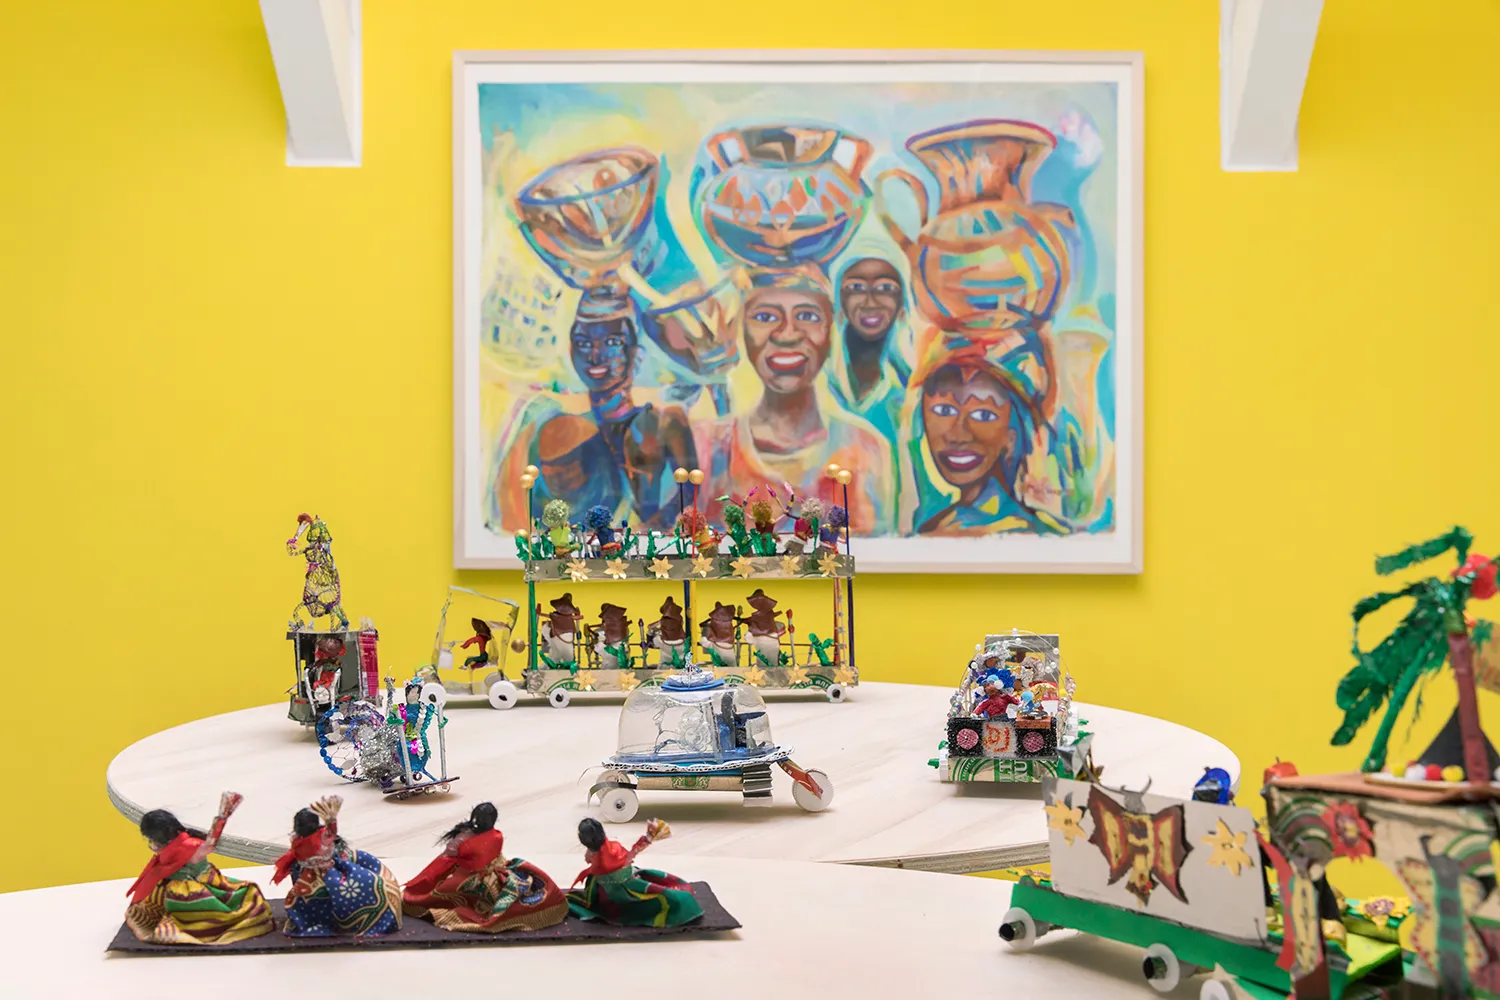 Een tafel met verschillende miniaturen van carnavalsoptochten voor een schilderij van mensen met een donkere huidskleur, lachend terwijl ze containers op hun hoofd dragen.